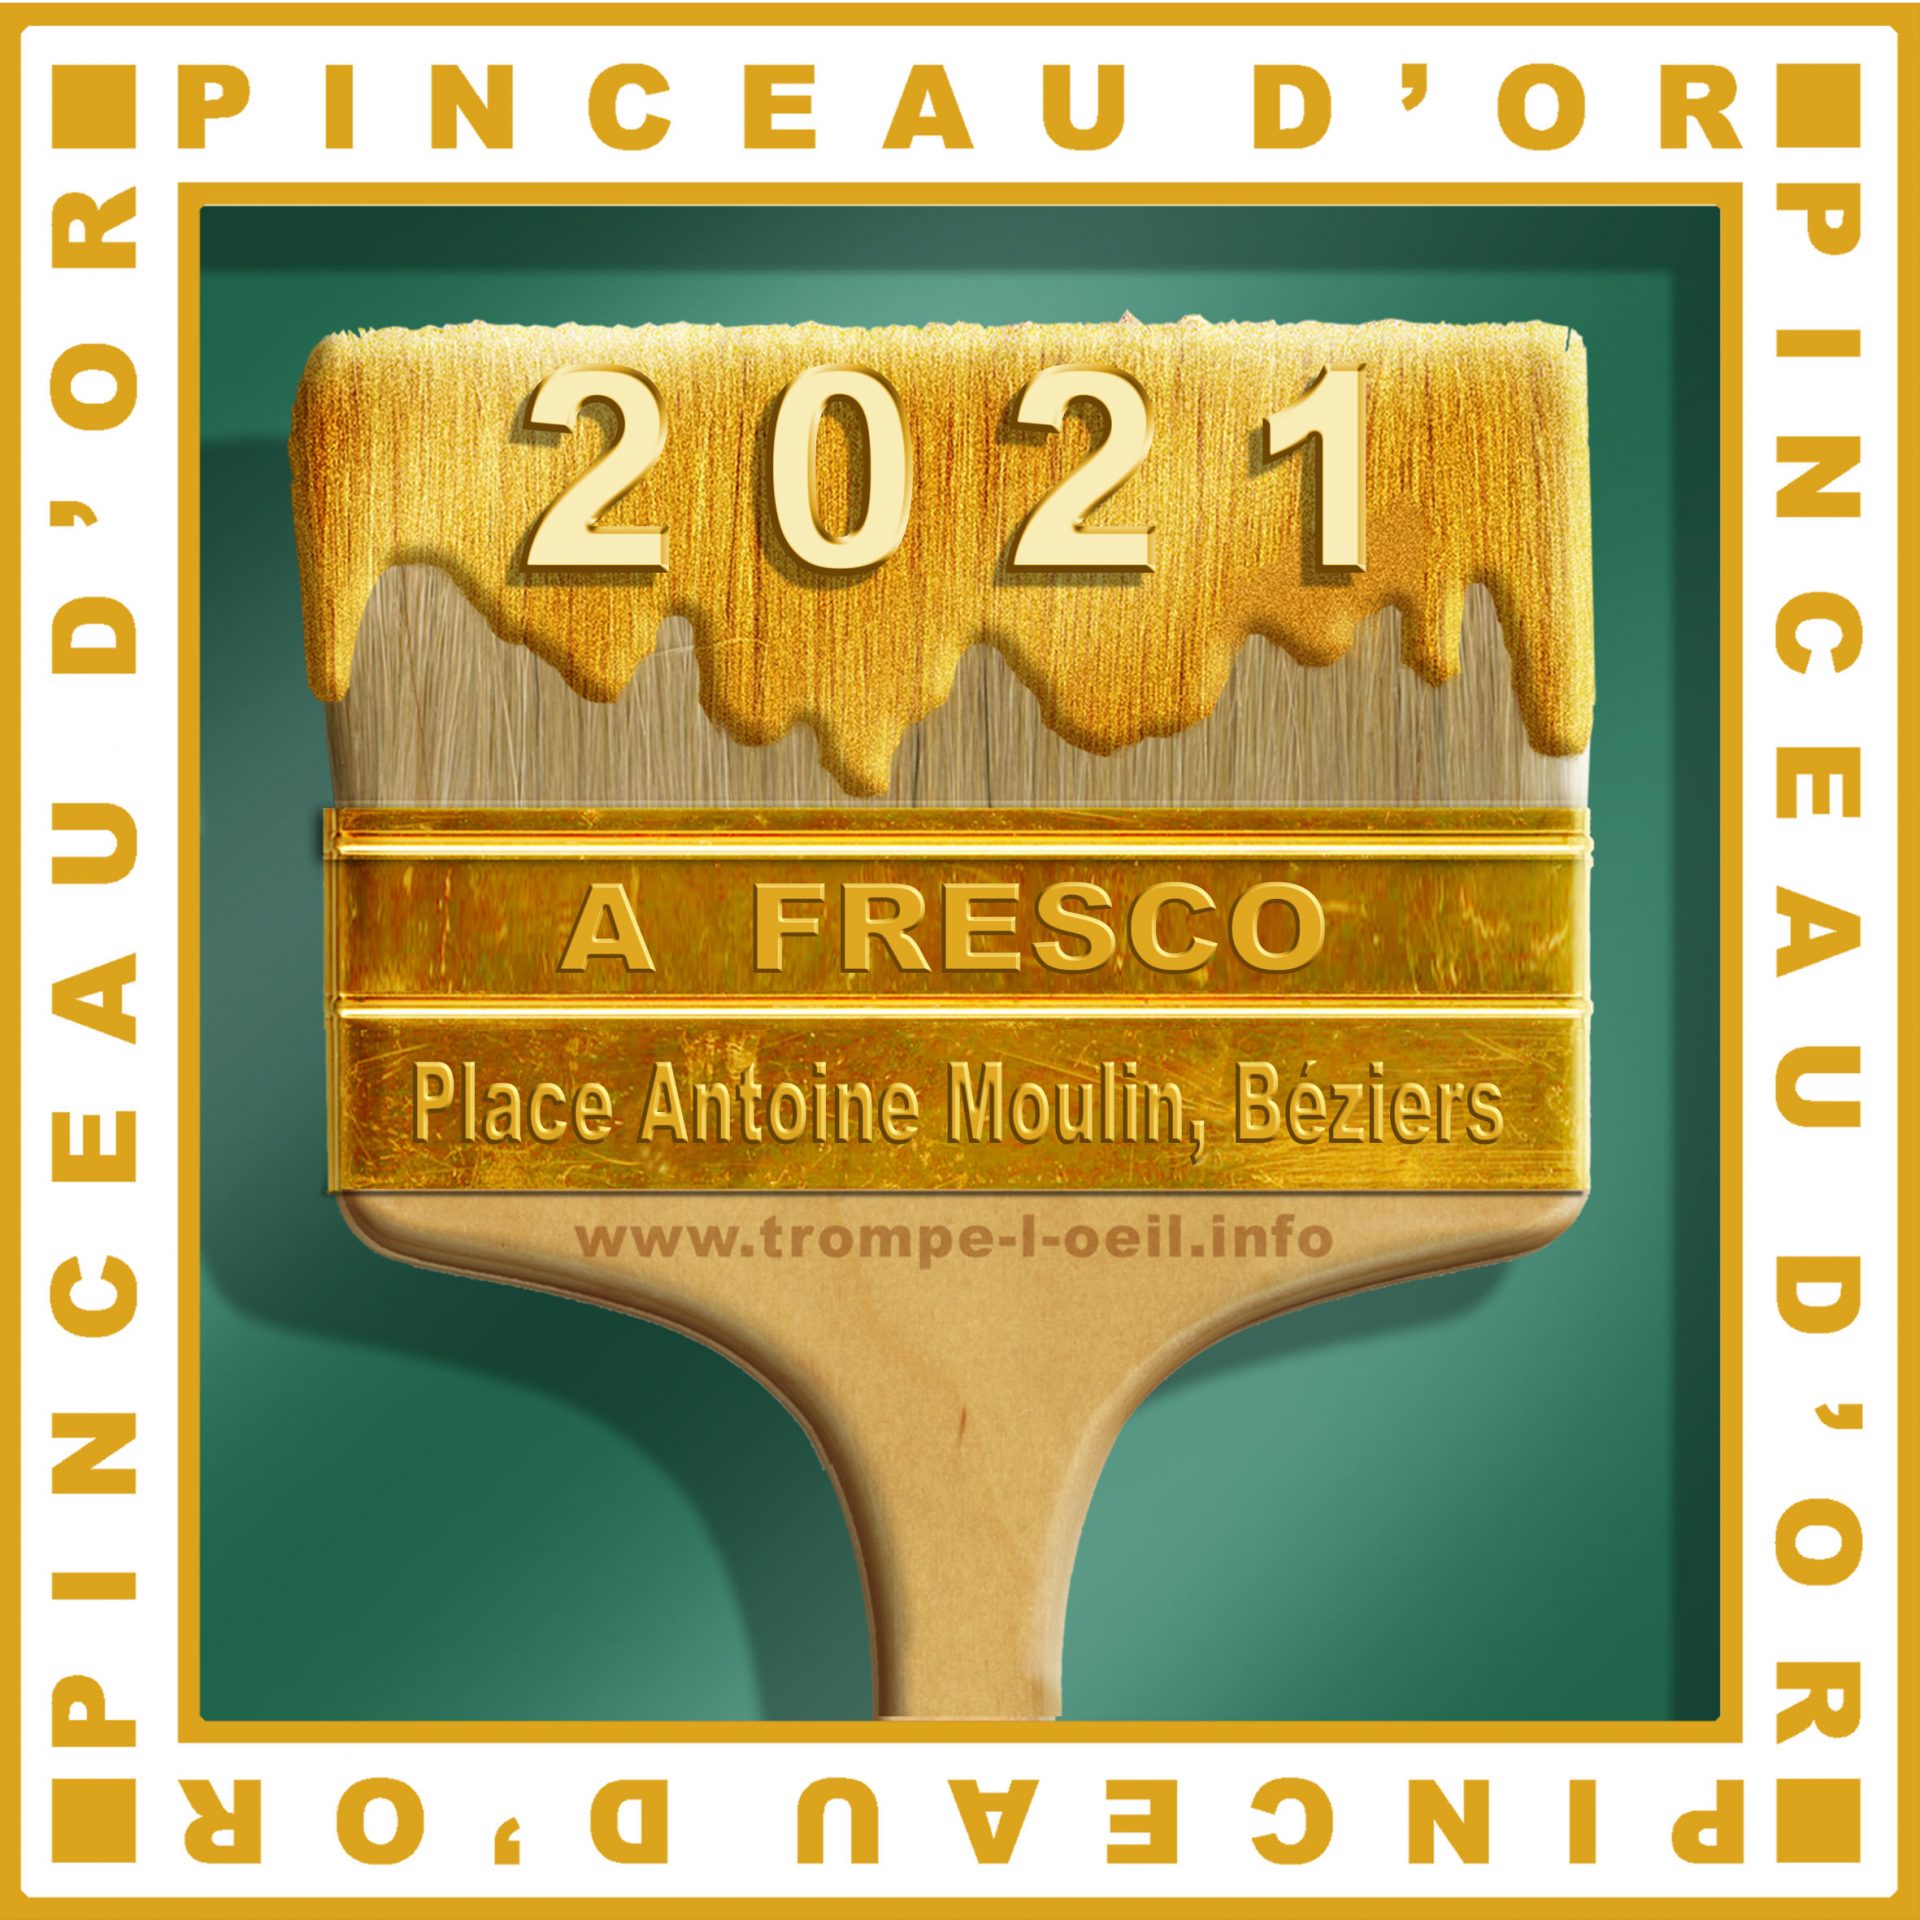 Afresco reçoit la distinction du Pinceau d'or 2021 pour la fresque Place Antoine Emile Moulin - Béziers